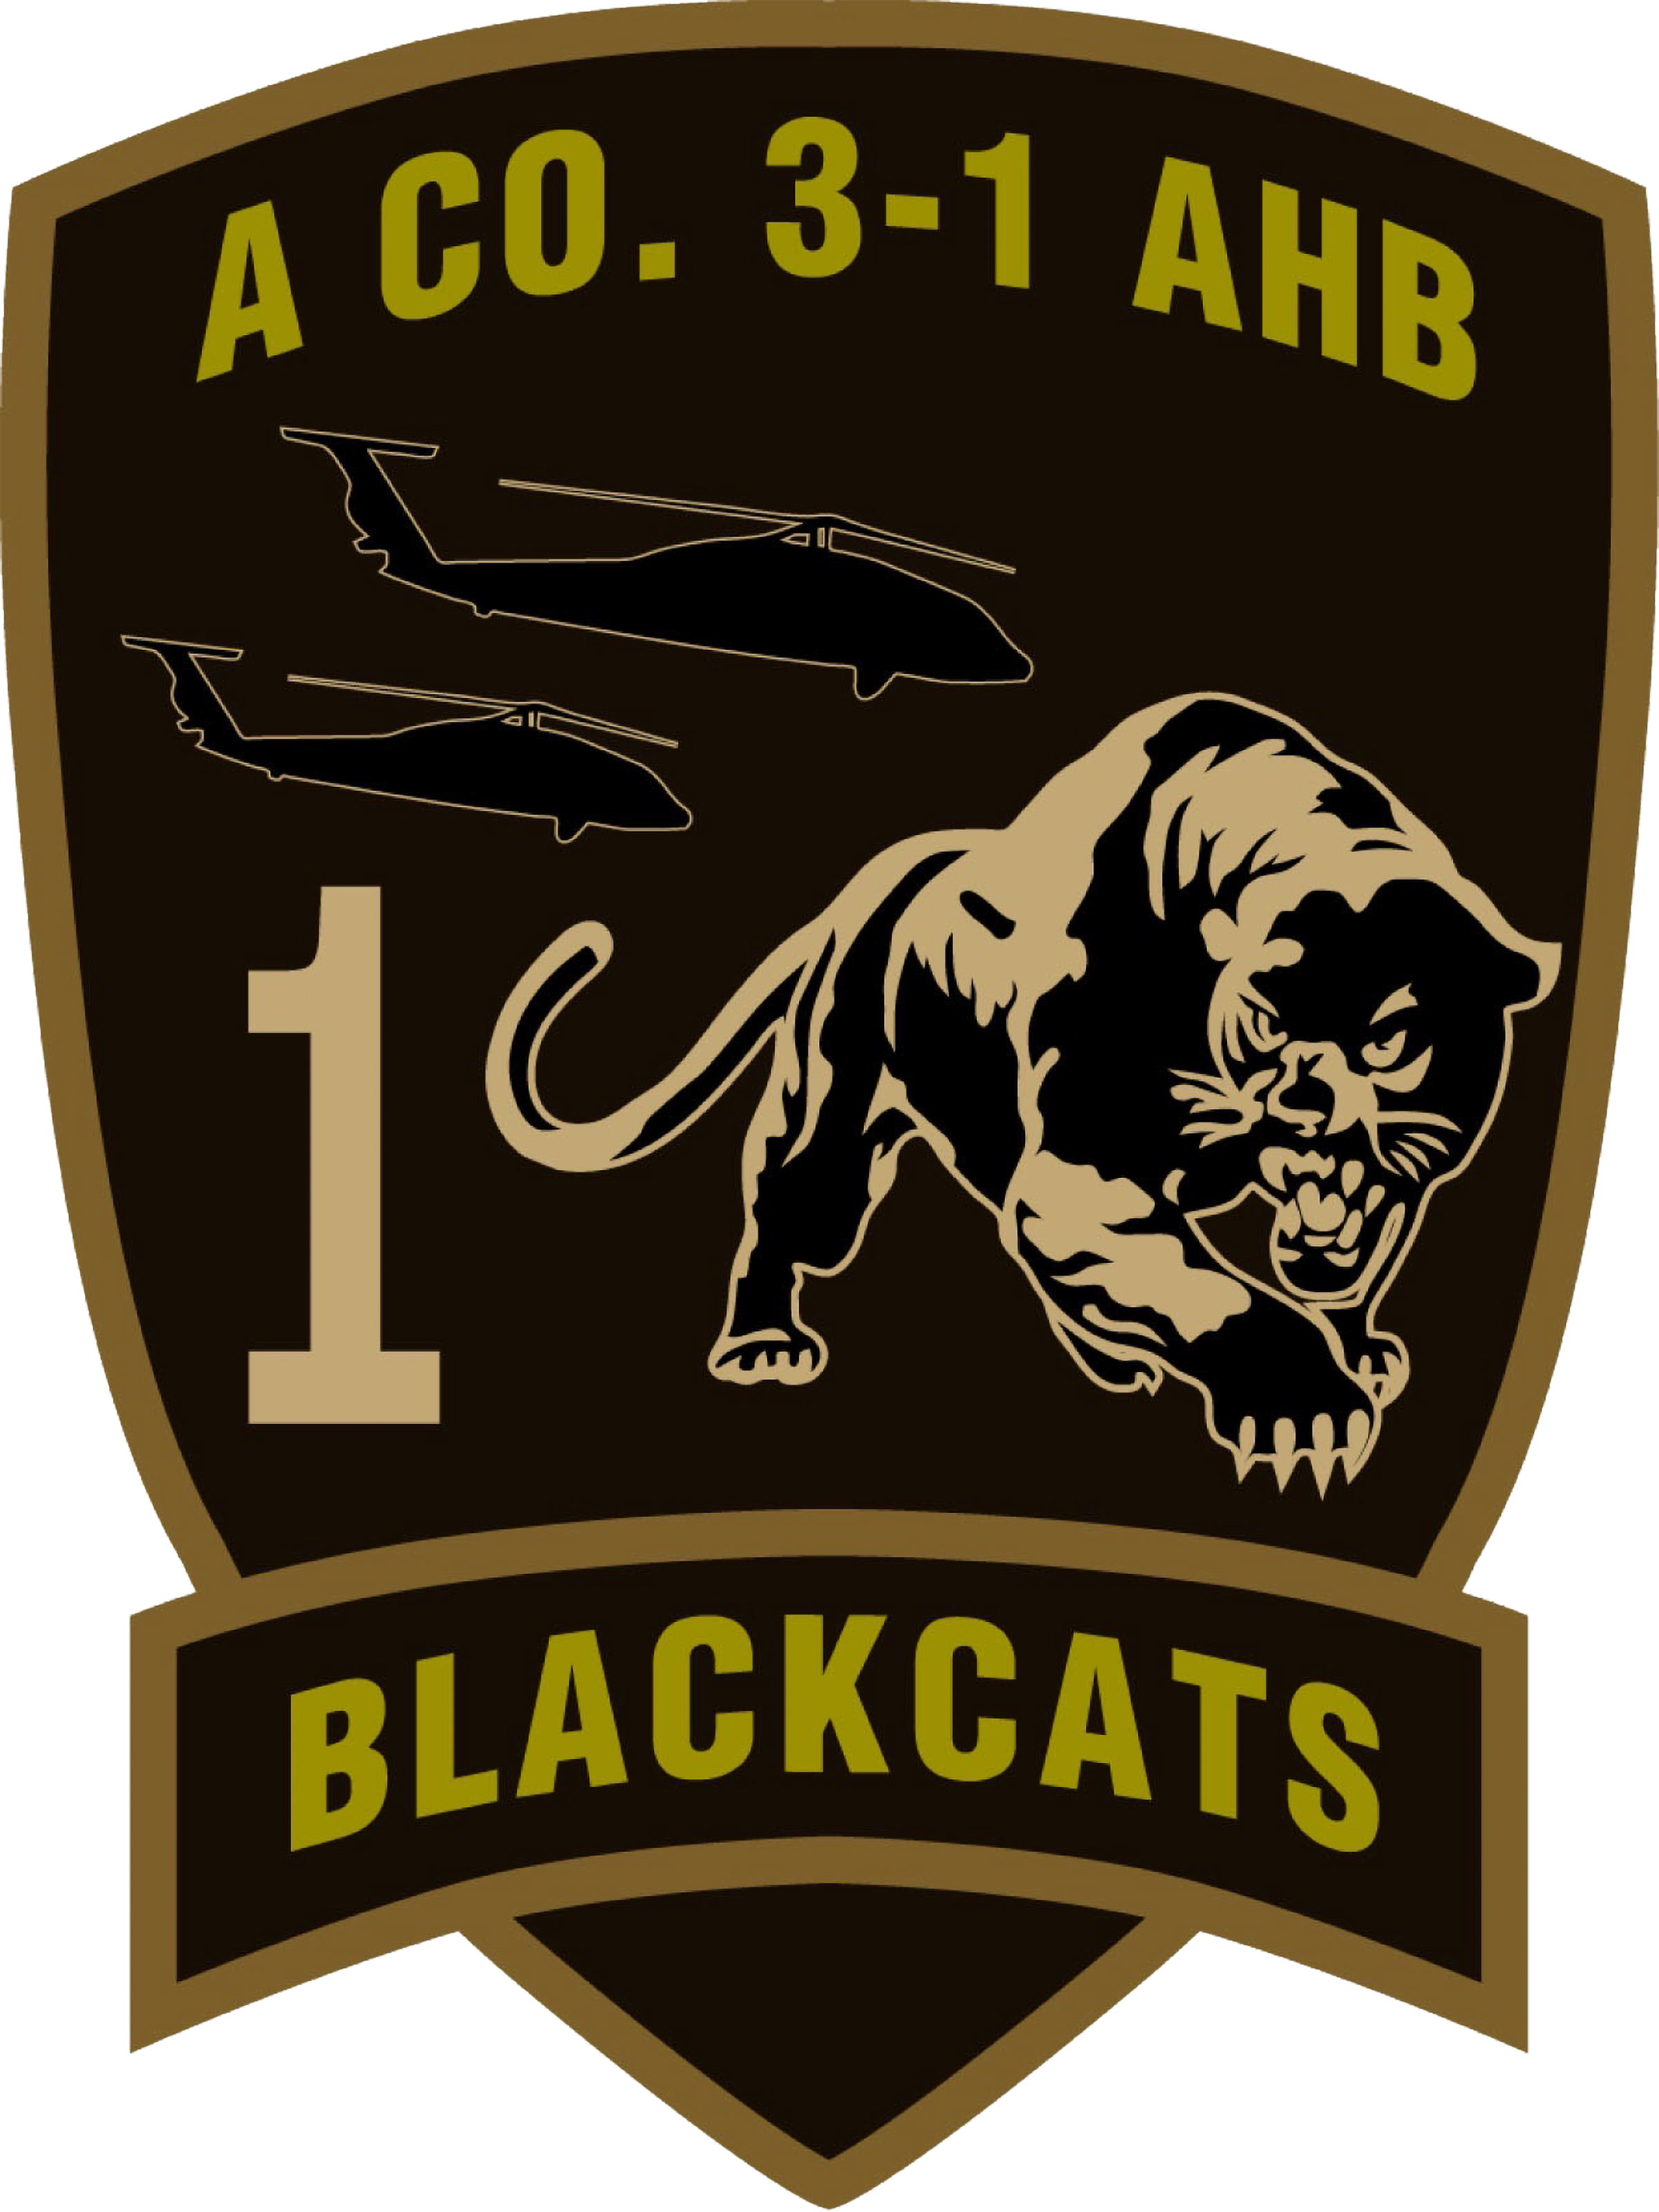 A Co, 3-1 AHB "Blackcats"